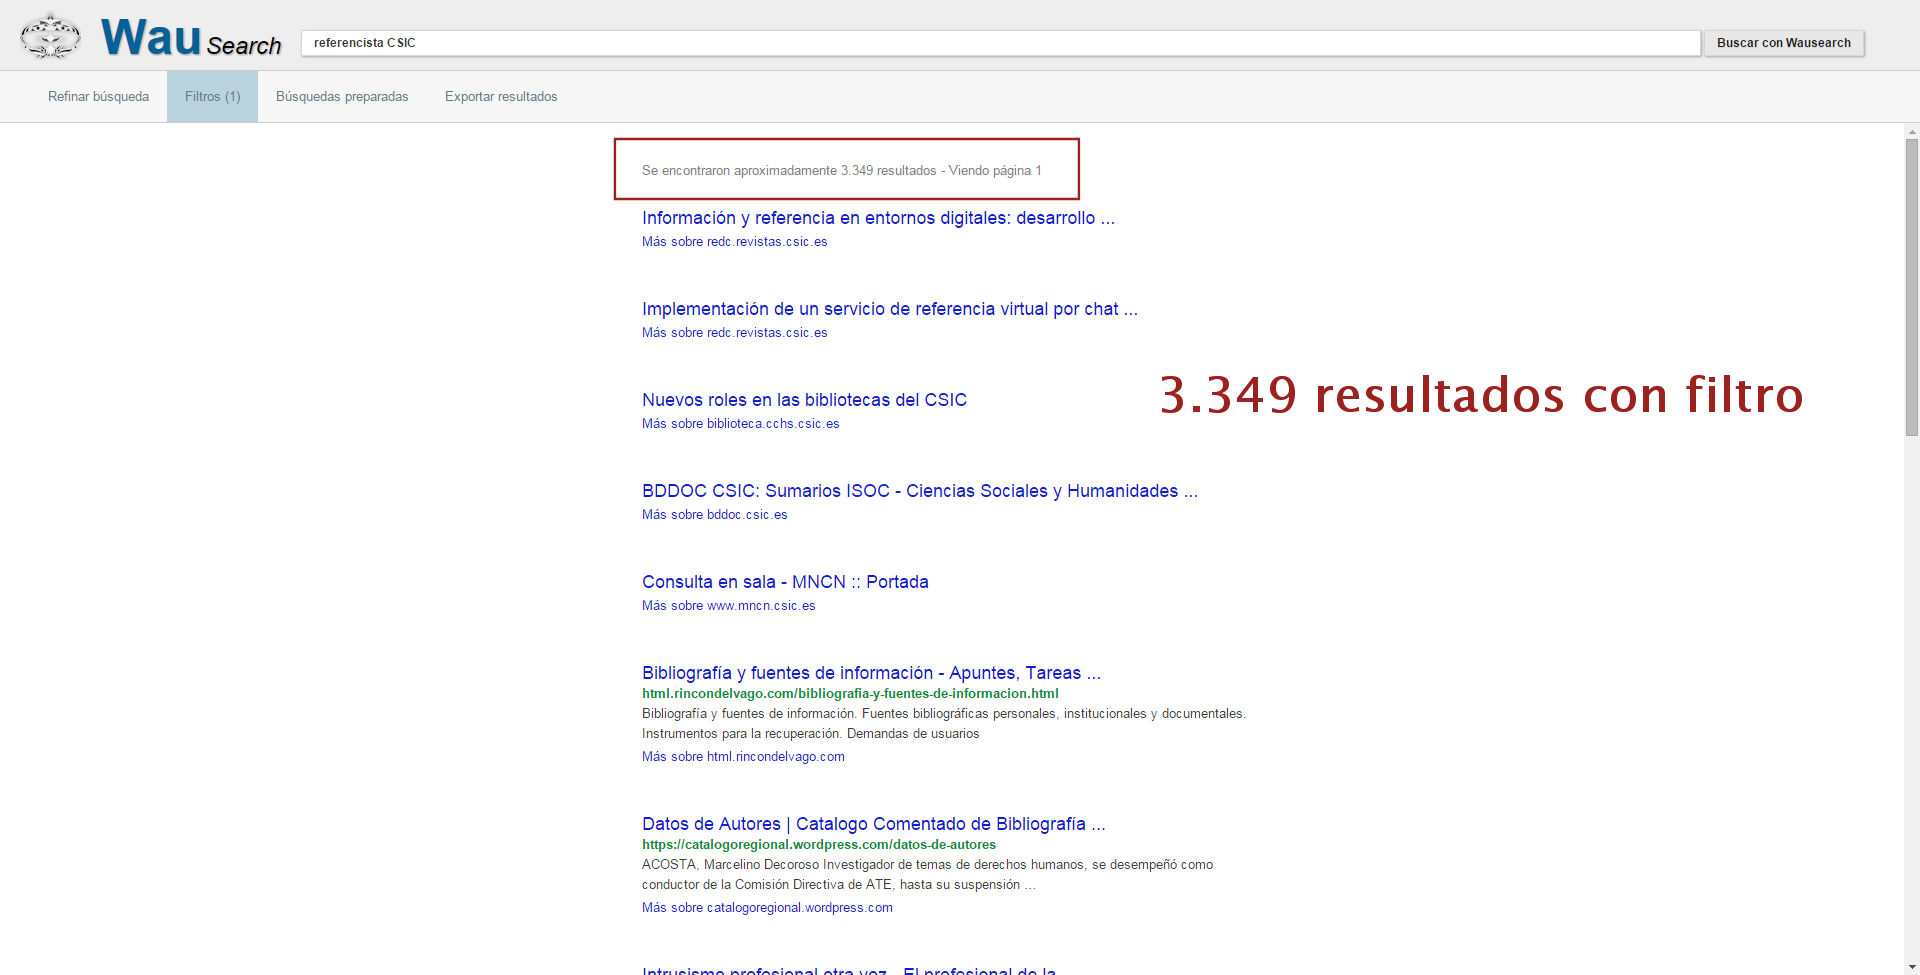 El número de resultados filtrados se reduce a 3.349, que corresponden a contenidos no disponibles en Google